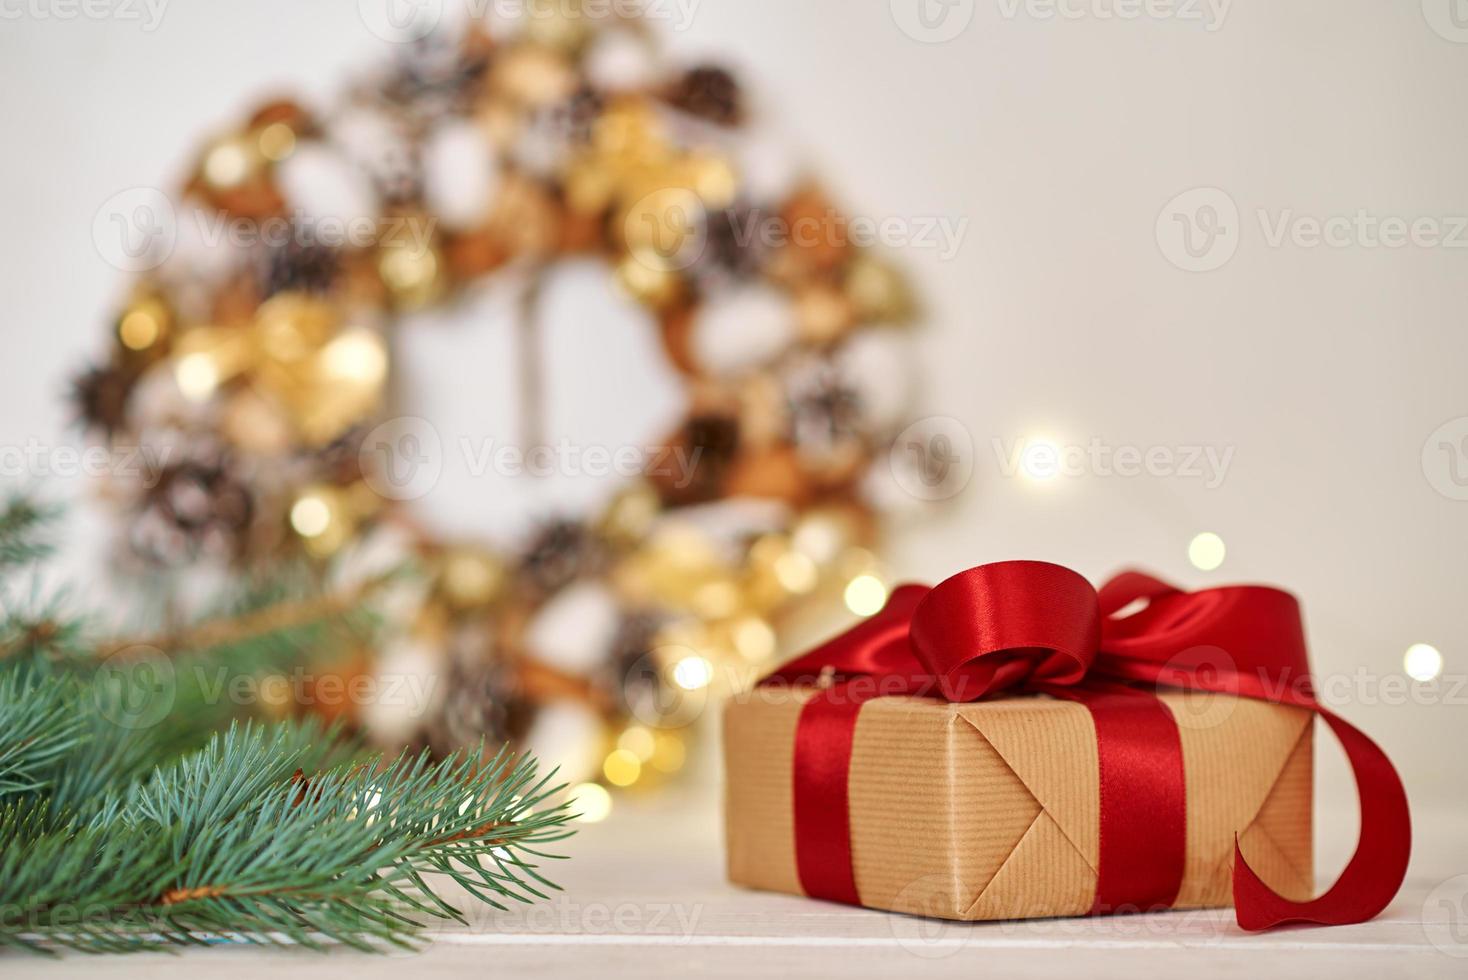 weihnachtsgeschenkbox mit band und weihnachtsschmuck foto